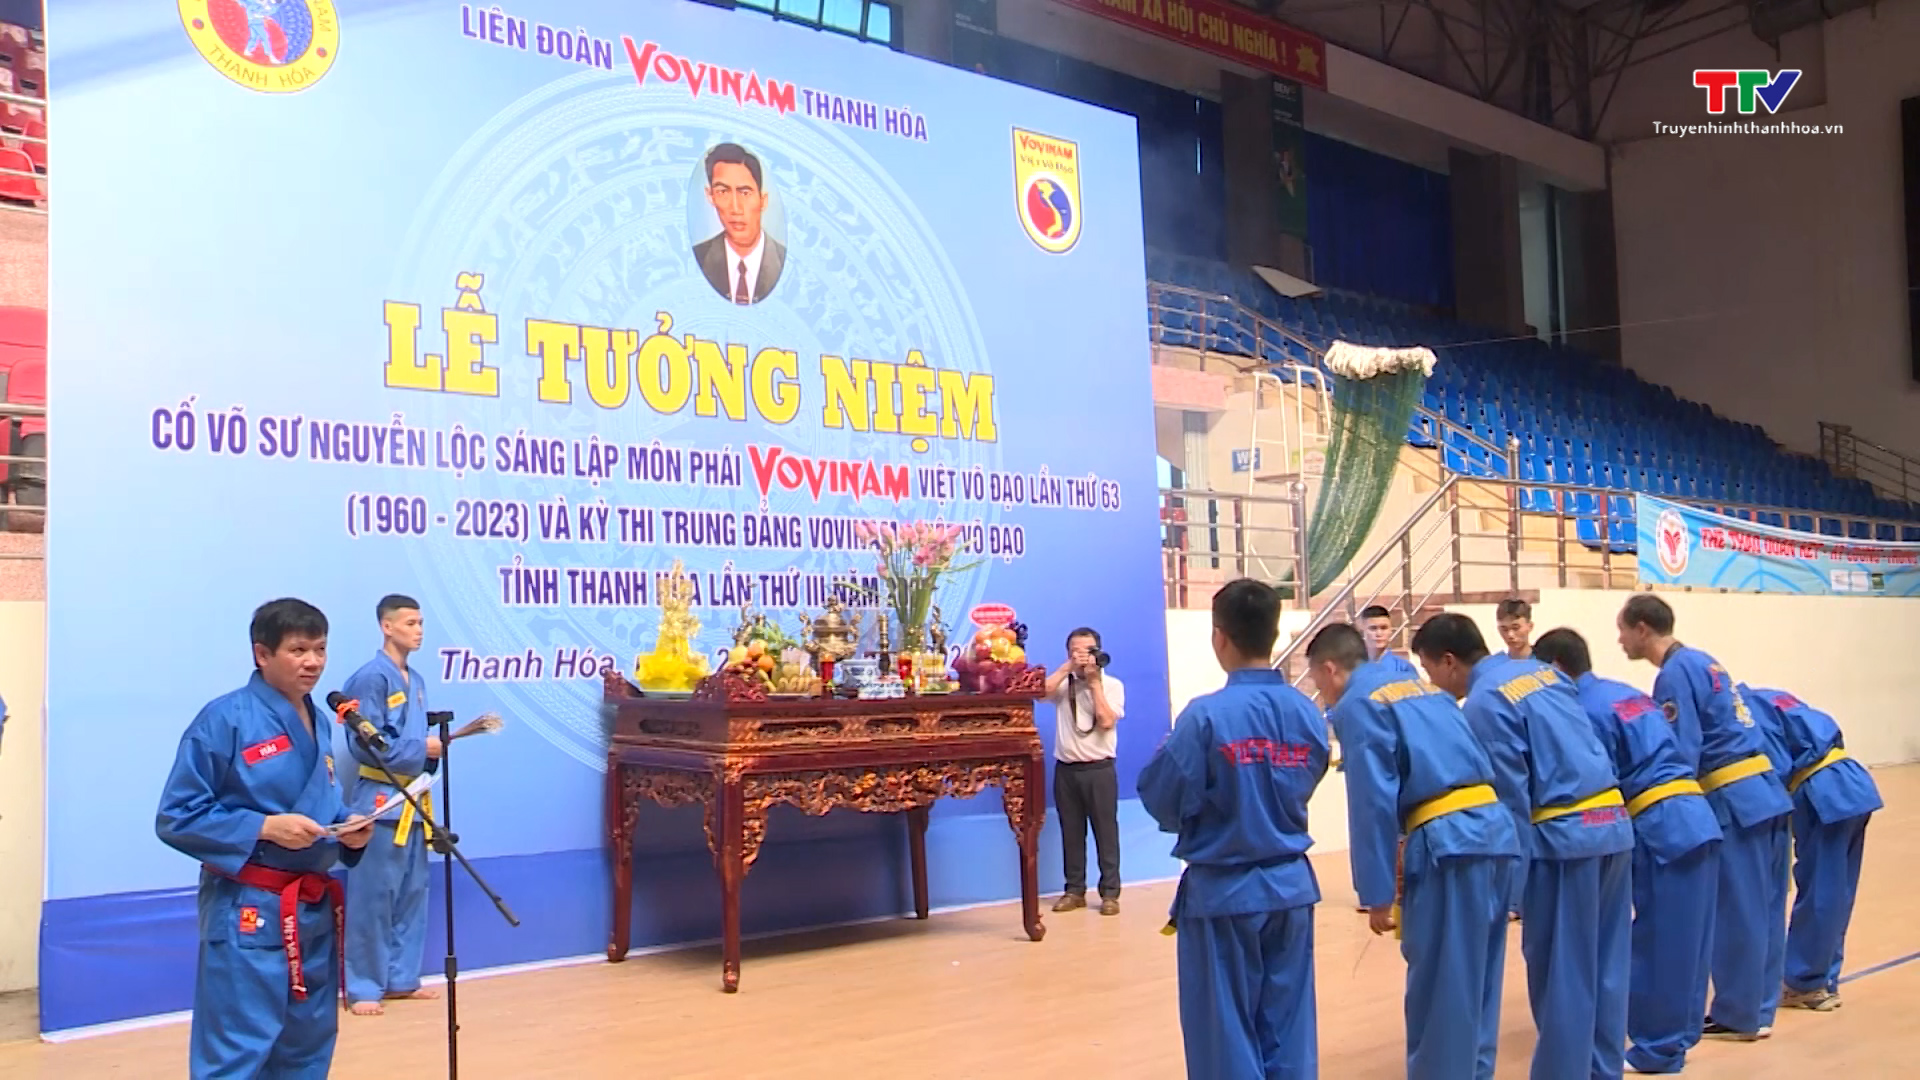 Liên đoàn Vovinam Thanh Hóa tưởng nhớ cố võ sư Nguyễn Lộc và trao giải cho các môn sinh - Ảnh 2.